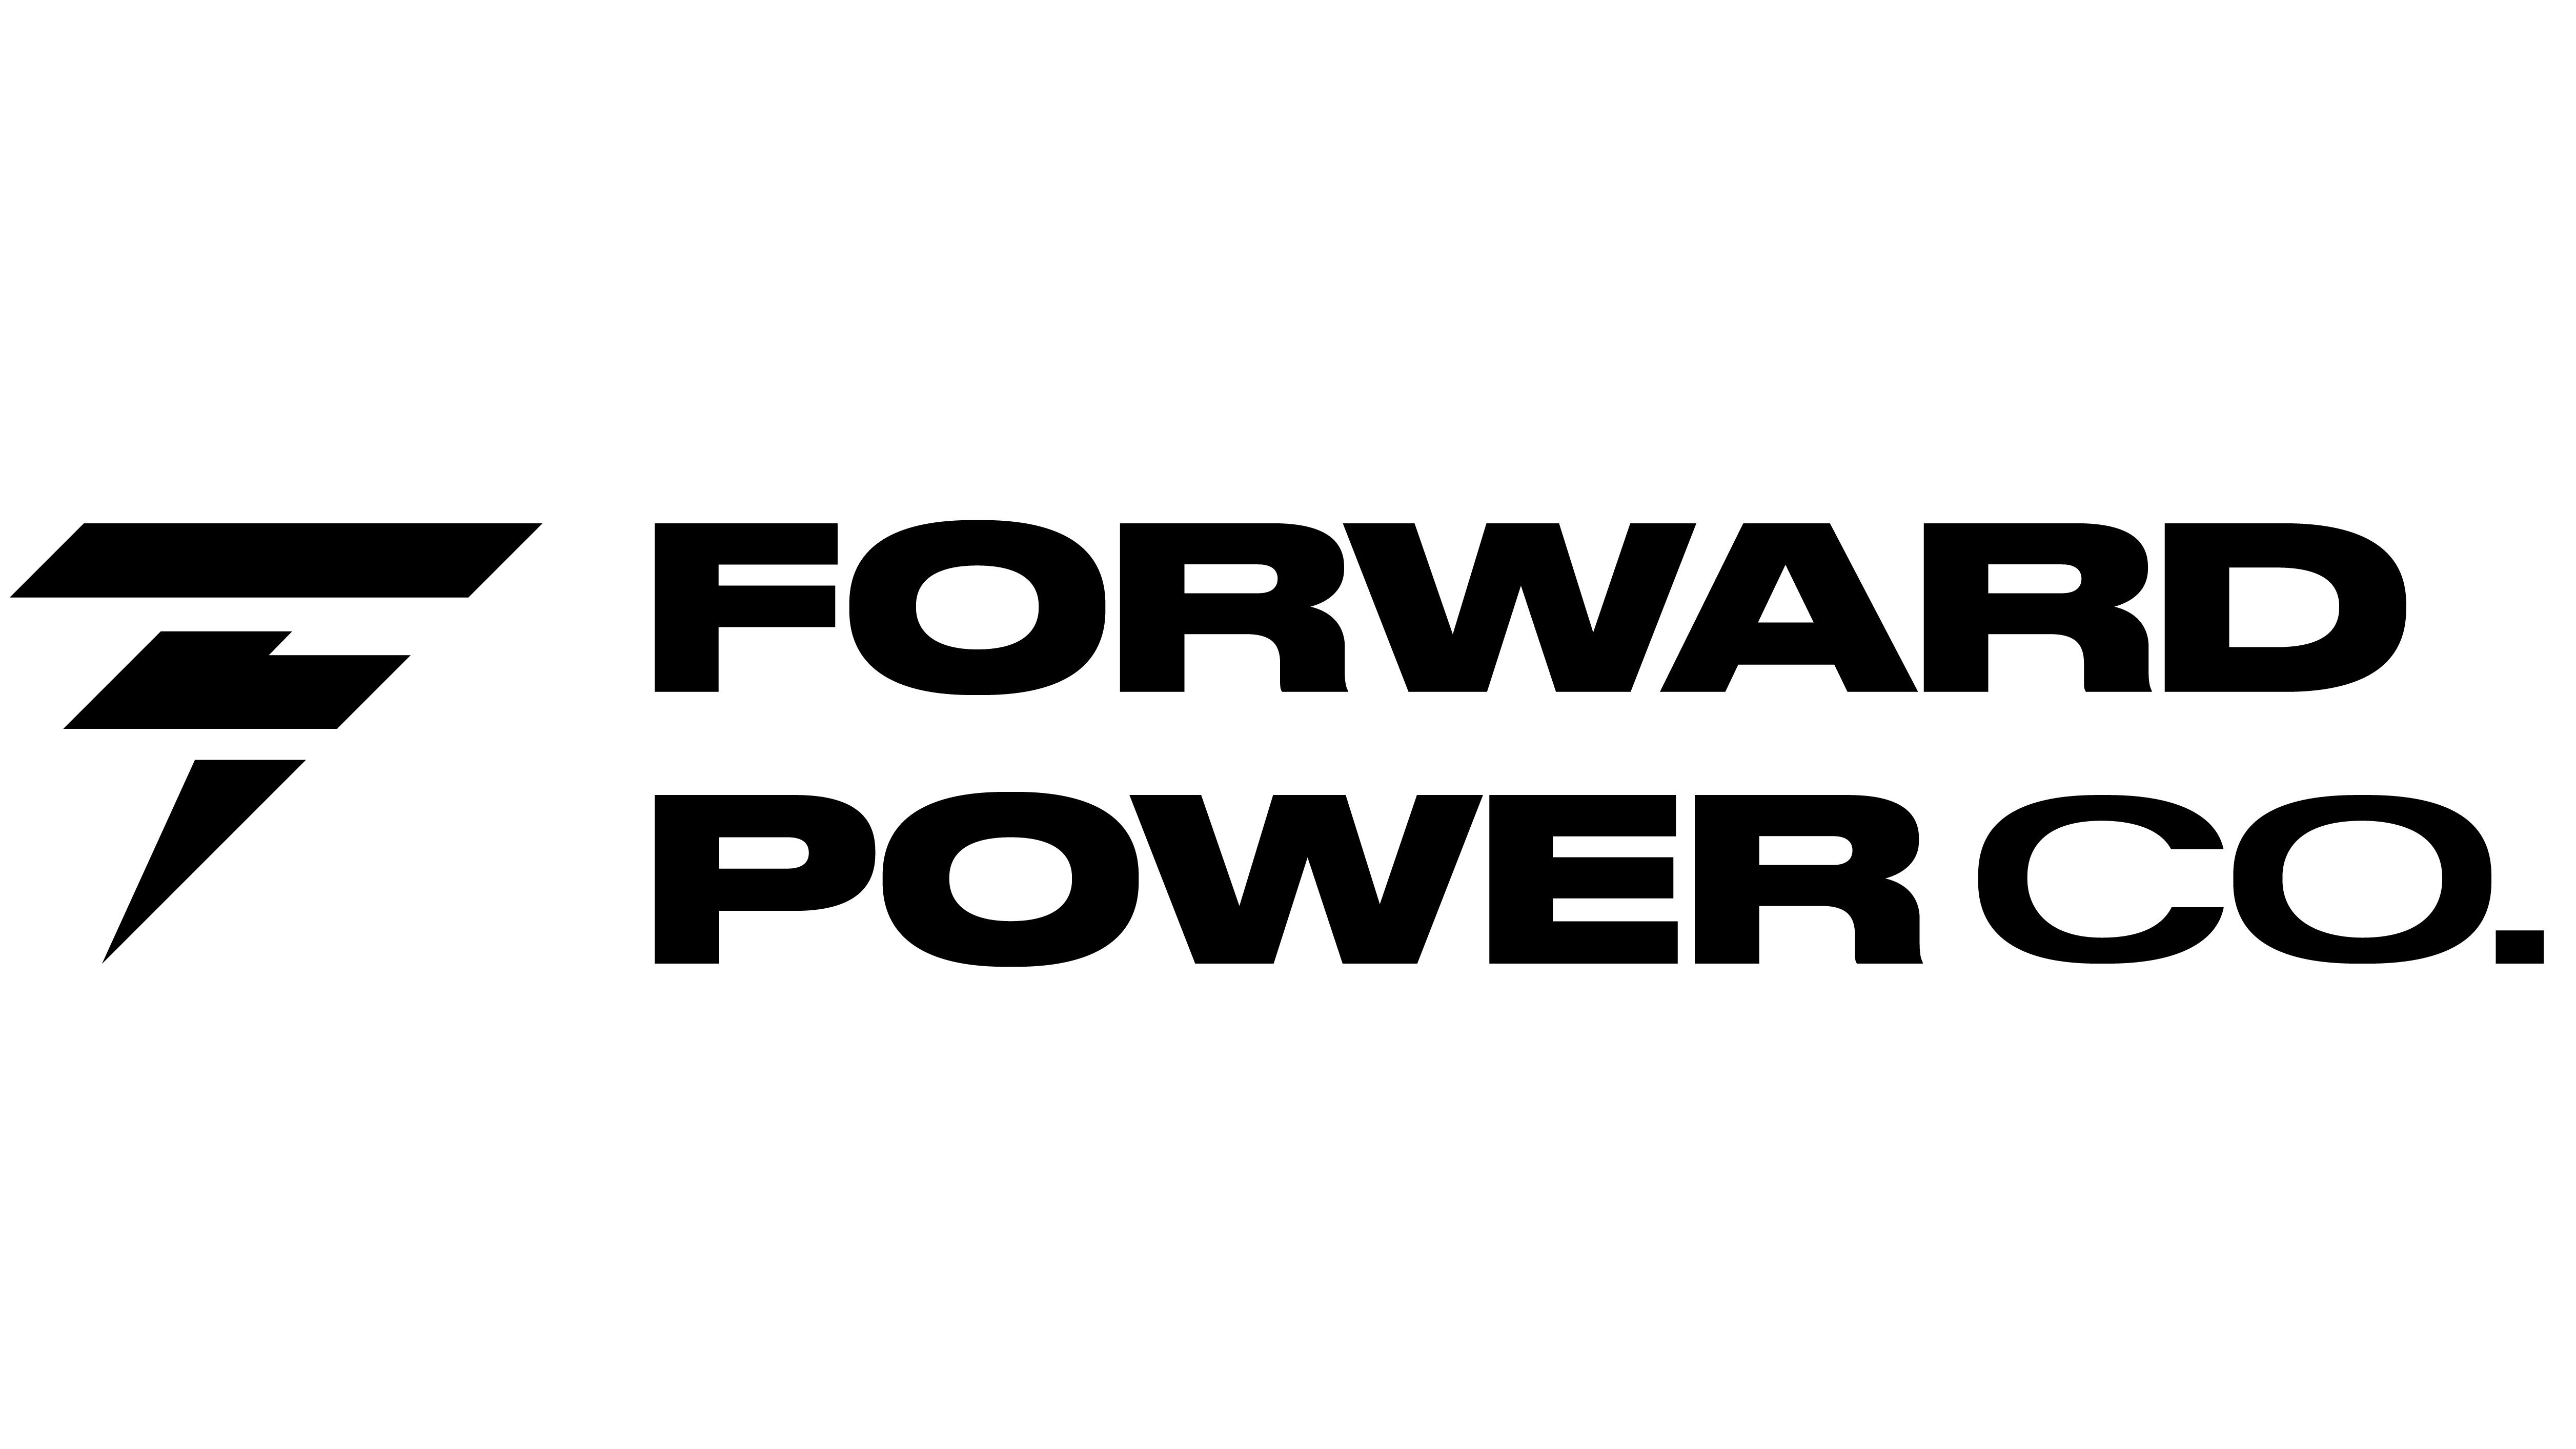  FORWARD POWER CO.